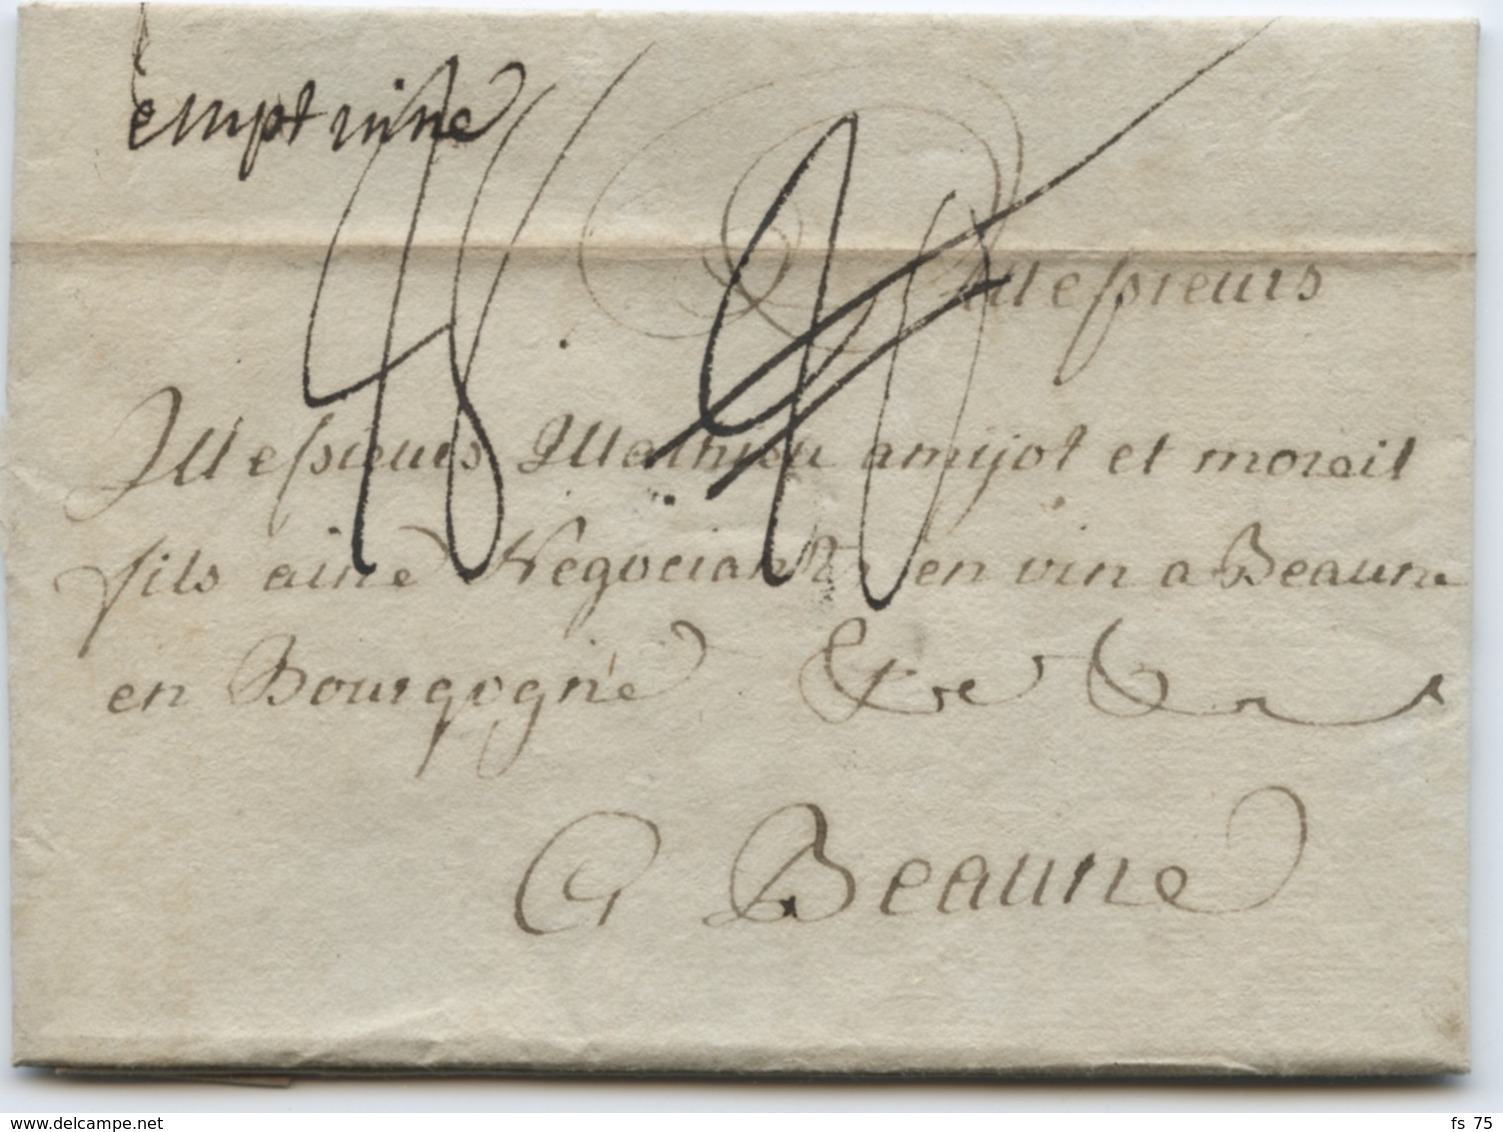 BELGIQUE - EMPTINNE MANUSCRIT SUR LETTRE AVEC TEXTE DE HAVELANGE POUR LA FRANCE, 1786 - 1714-1794 (Pays-Bas Autrichiens)